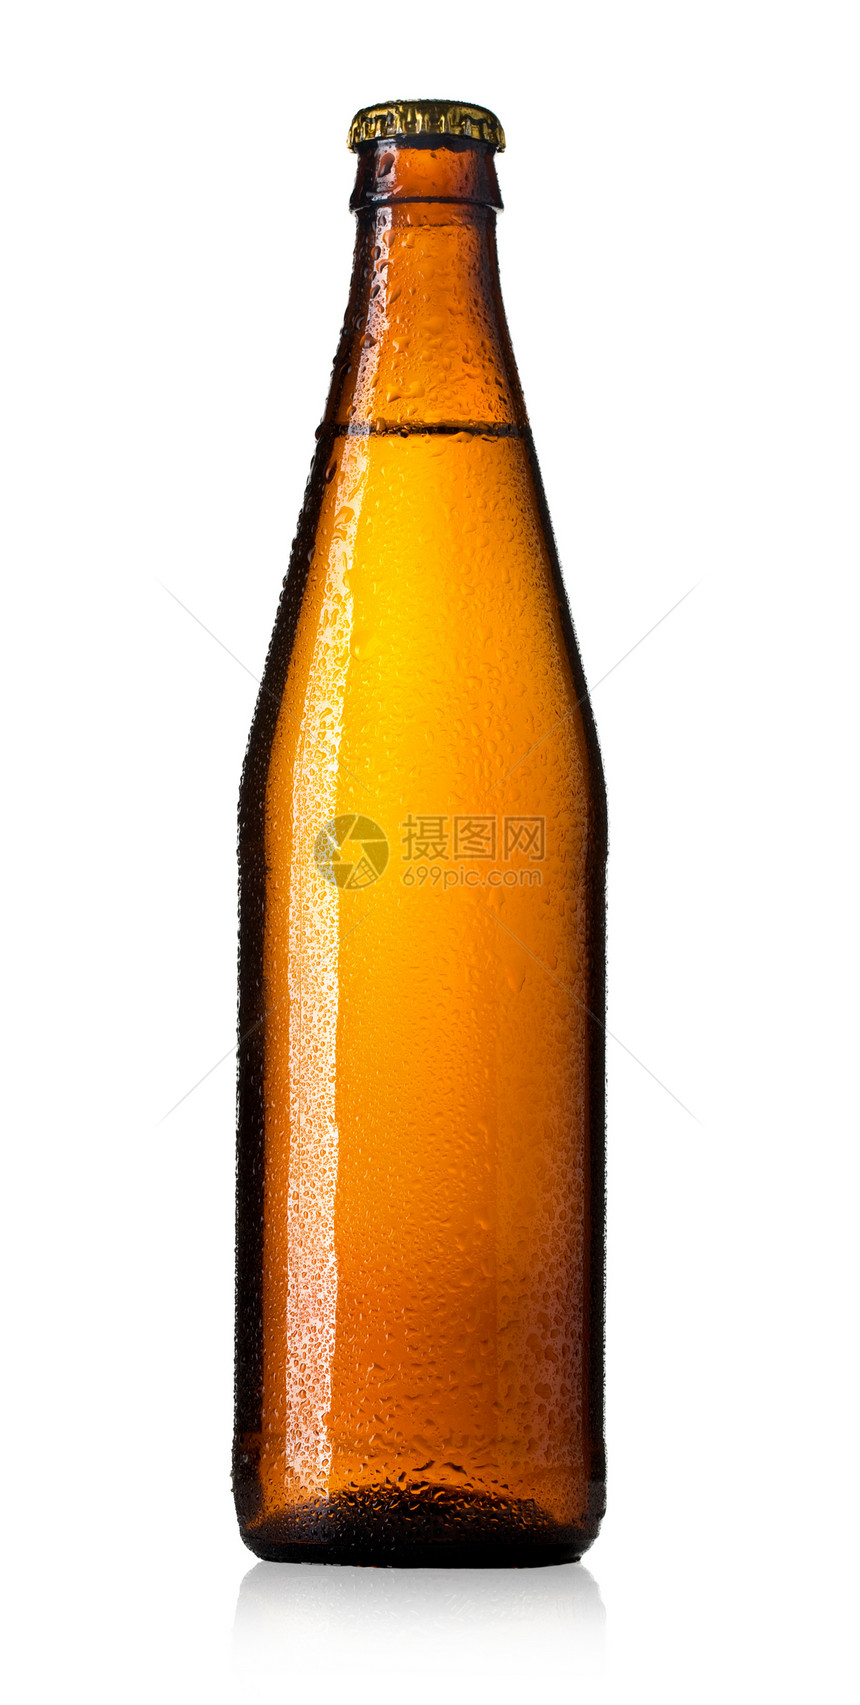 白背景上隔着滴水的啤酒瓶图片